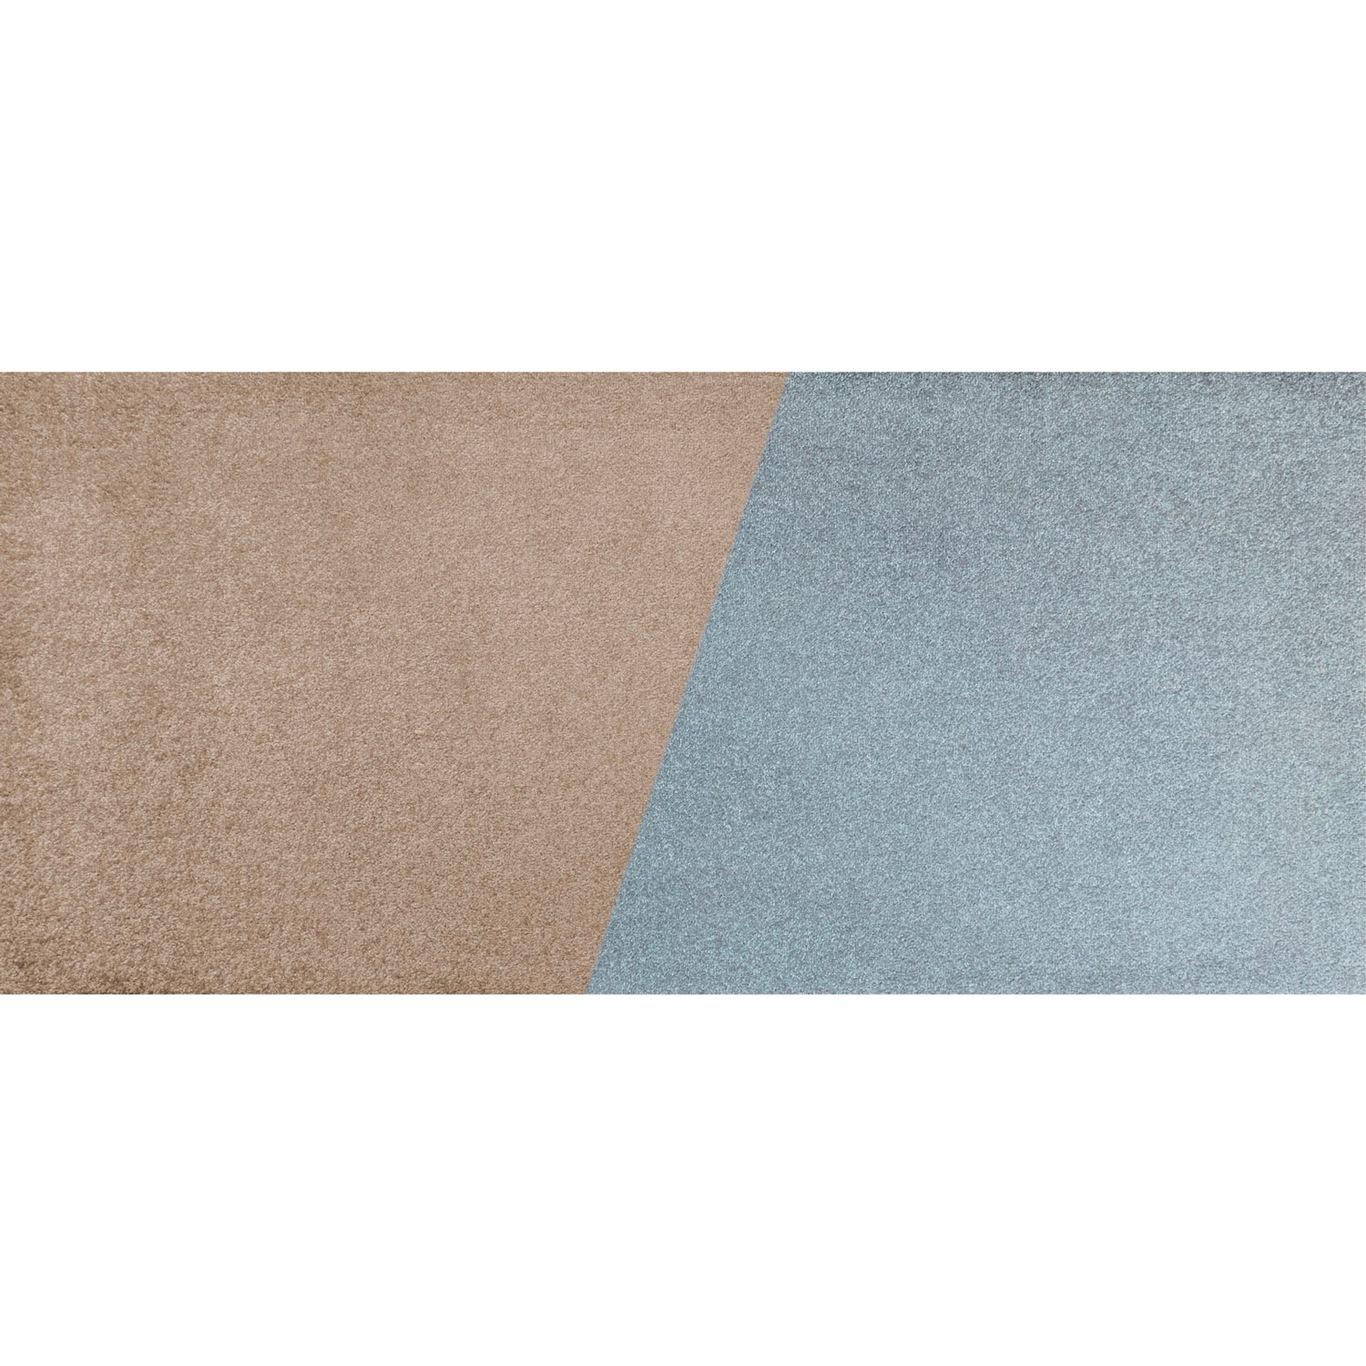 Duet Rug 70x150 cm, Slate Blue